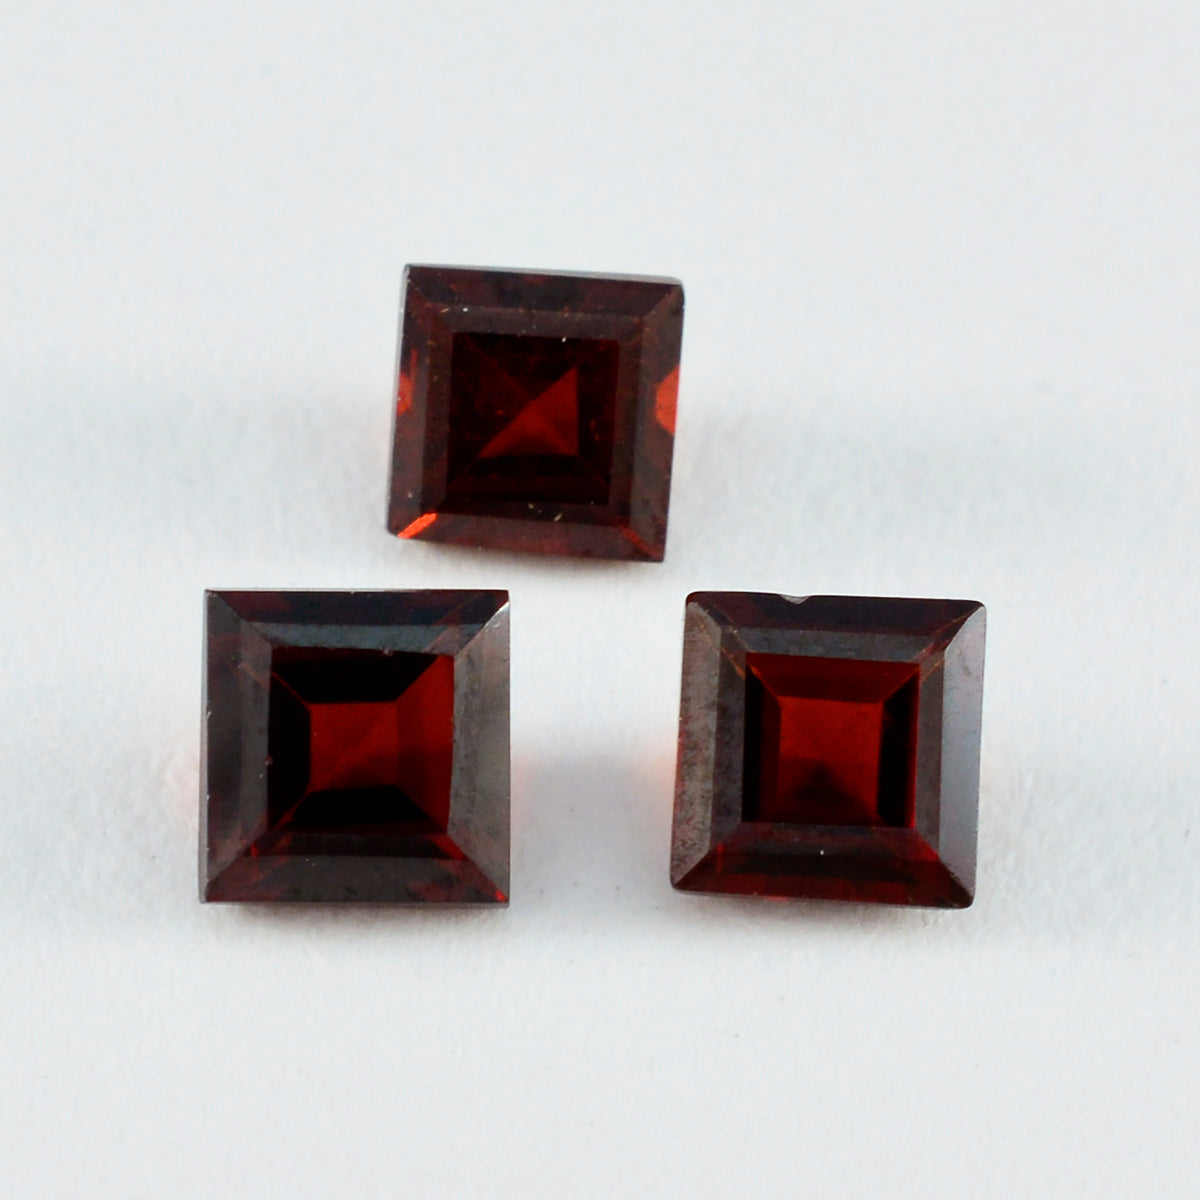 riyogems 1шт натуральный красный гранат ограненный 13x13 мм квадратной формы красивый качественный драгоценный камень